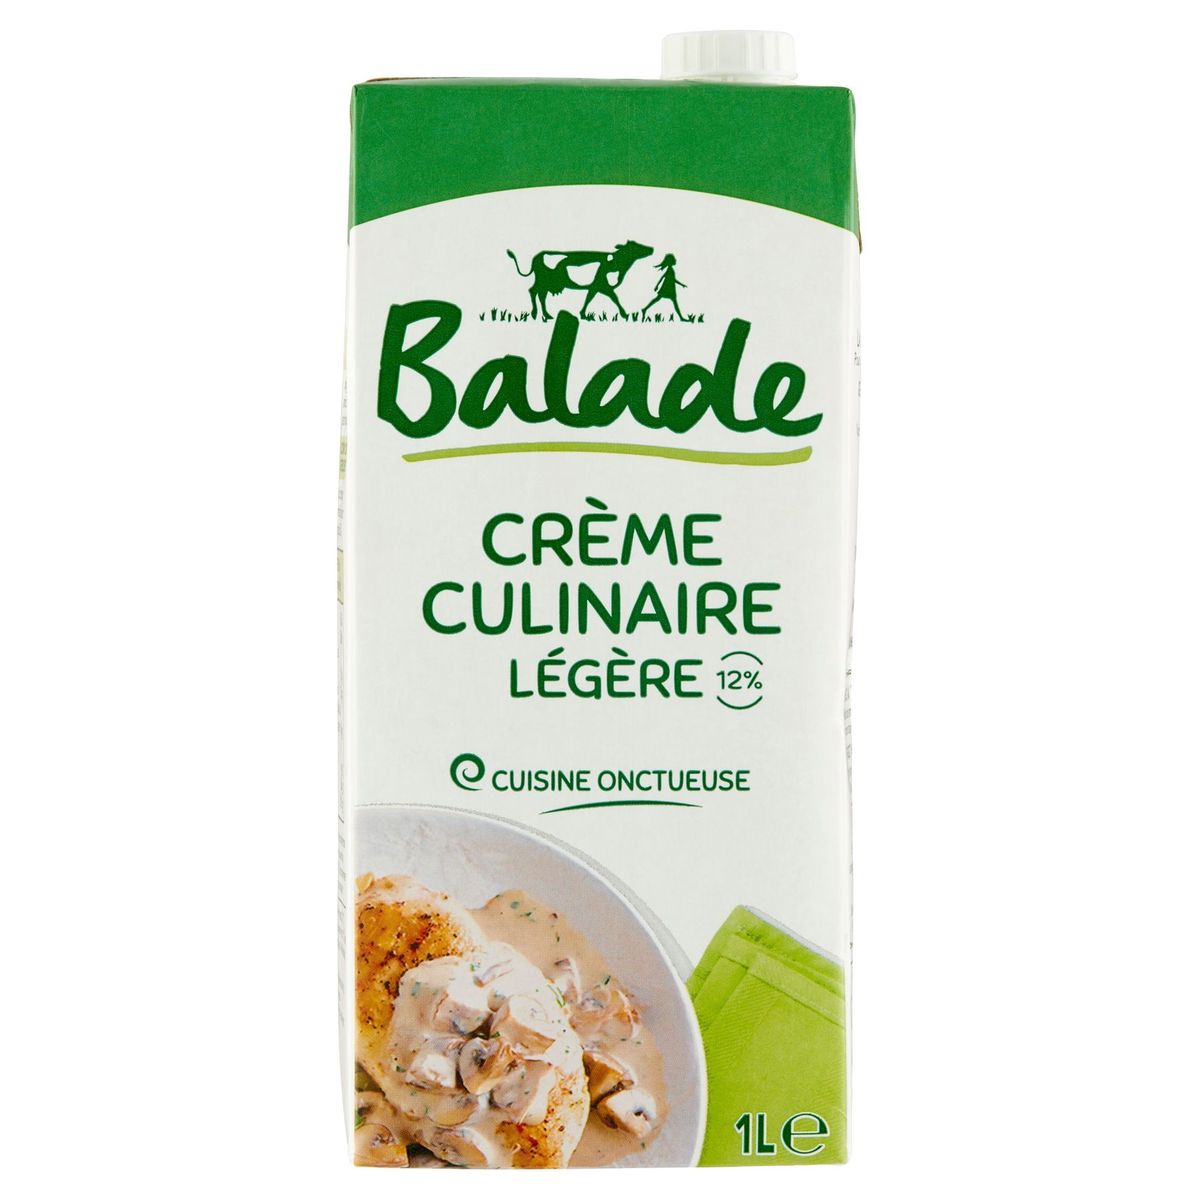 Balade Crème Culinaire Légère 12% 1 L